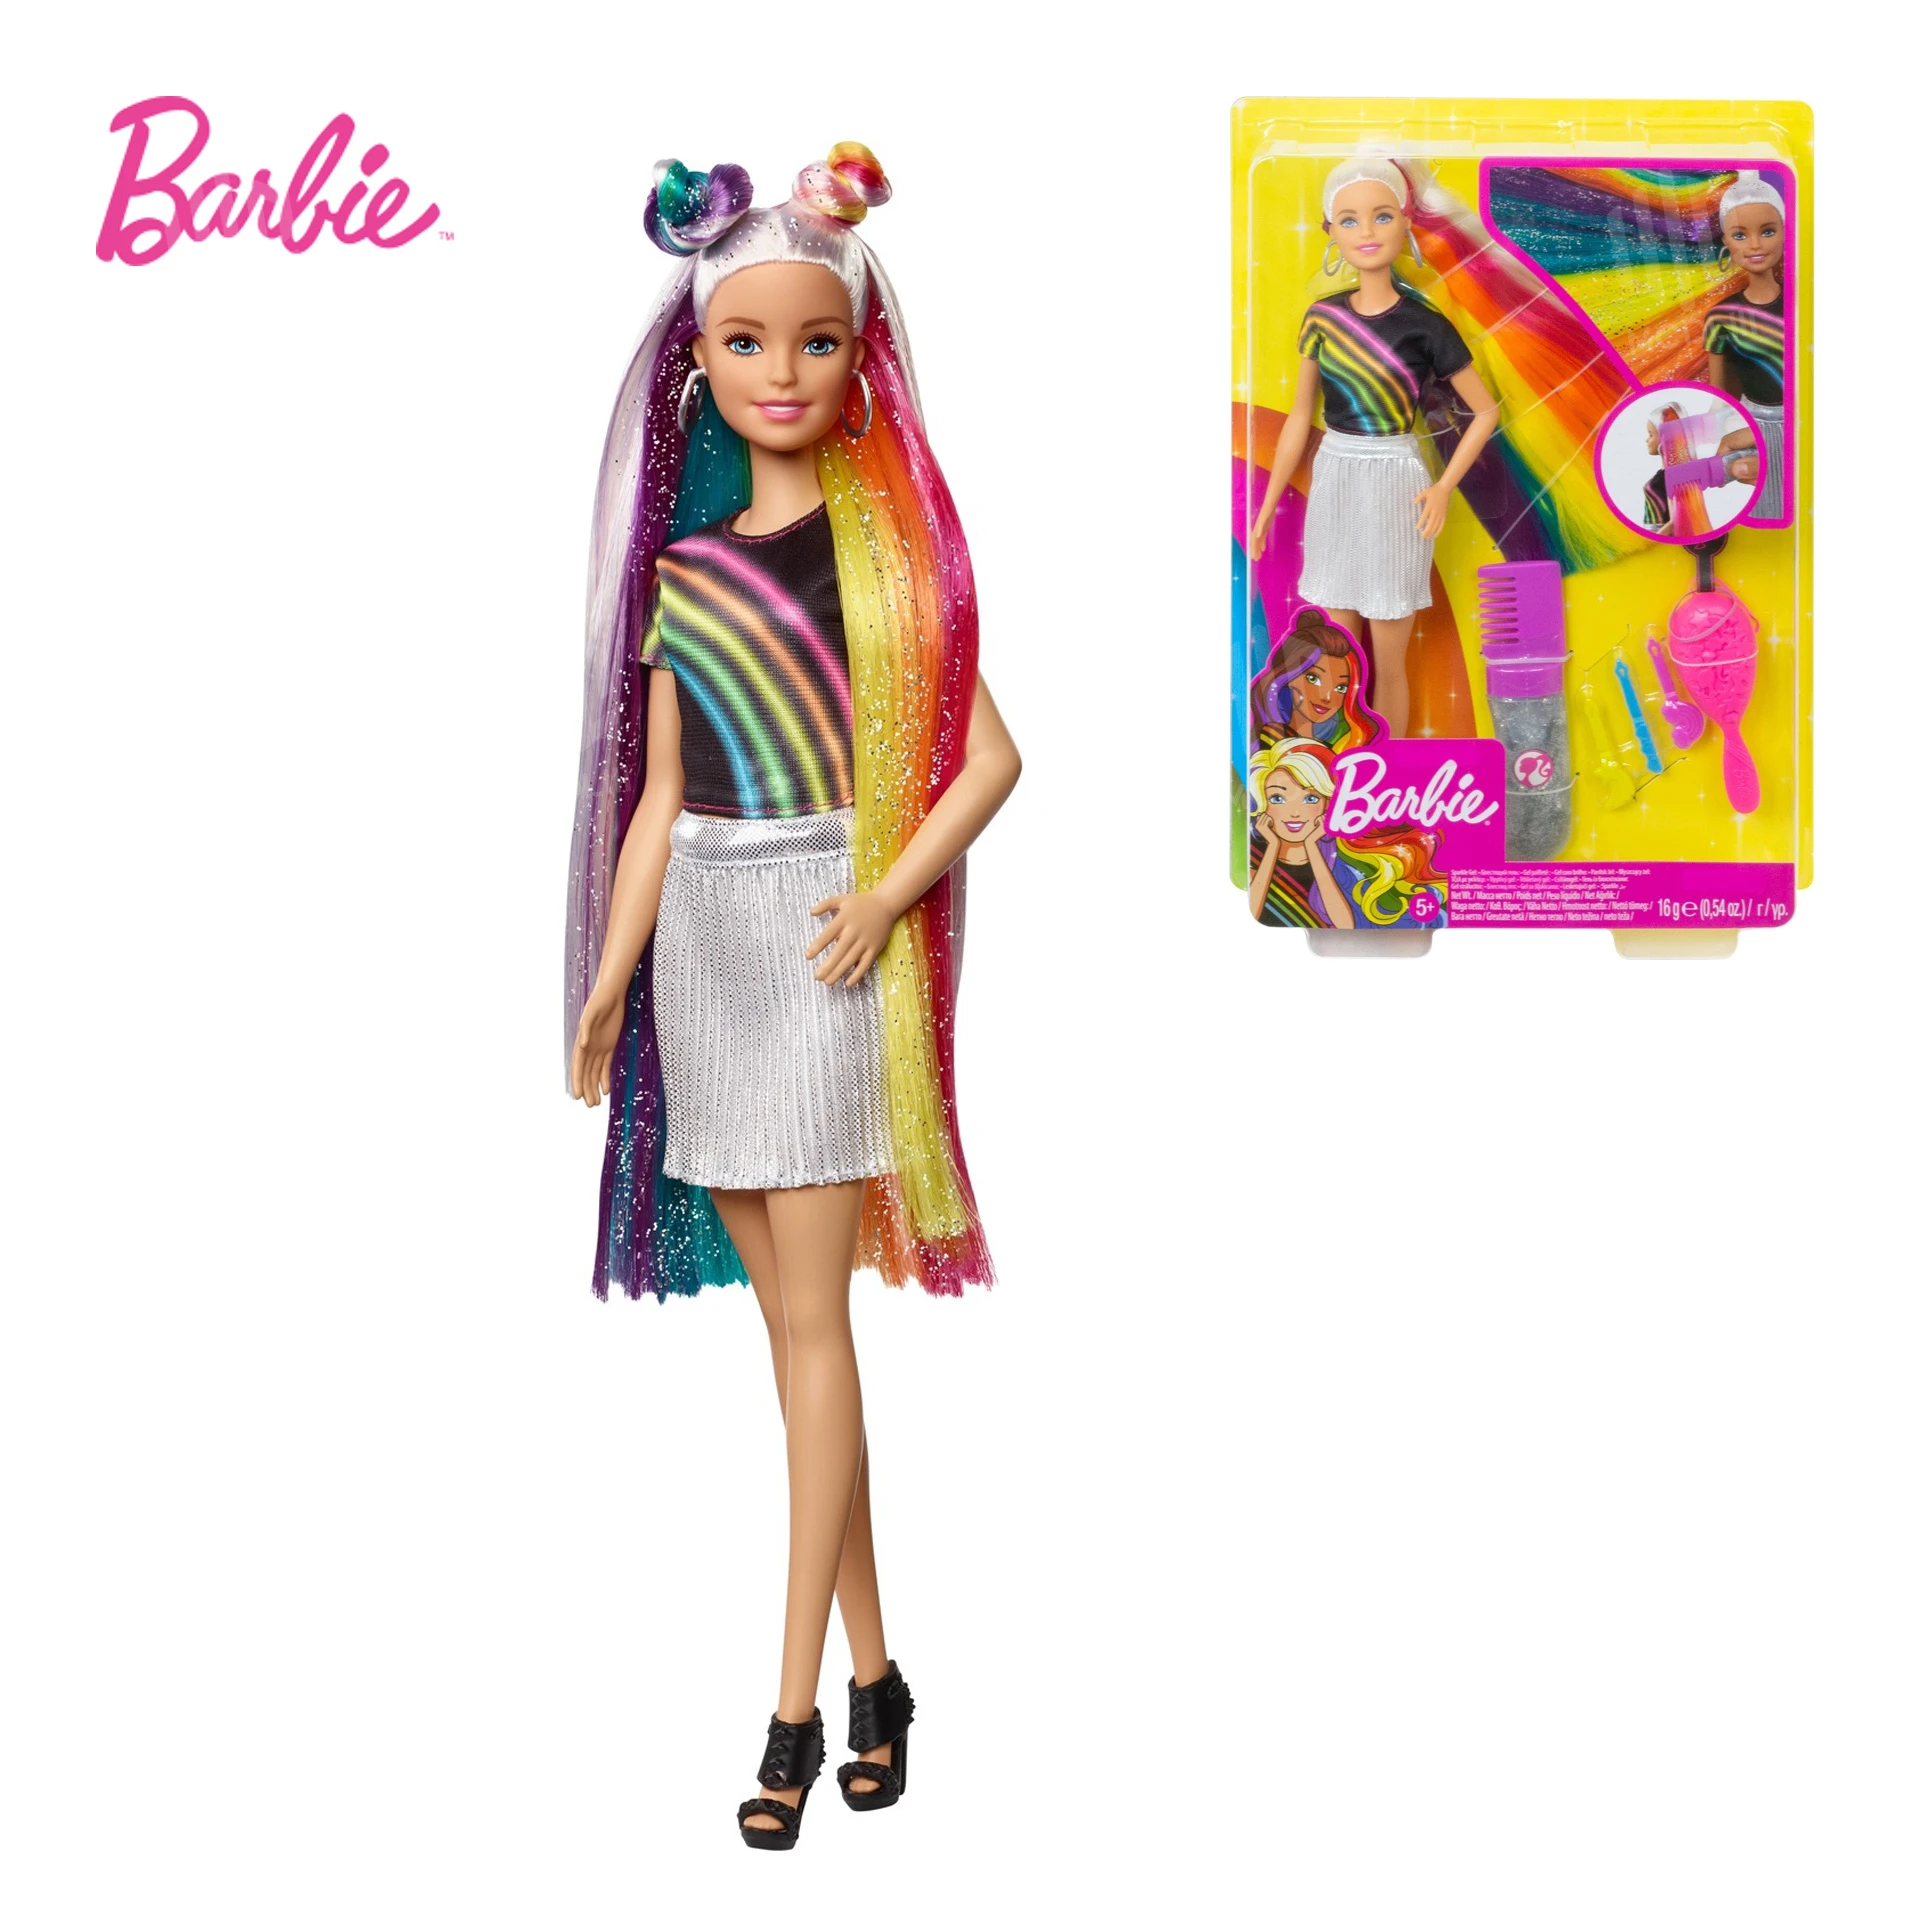 overdracht Leninisme abortus Originele Barbie Poppen Rainbow Sparkle Haar Pop Accessoires, Voor Barbie  Collector Meisjes Kids Voor Speelgoed Gift Childrens Speelgoed FXN96|Poppen|  - AliExpress